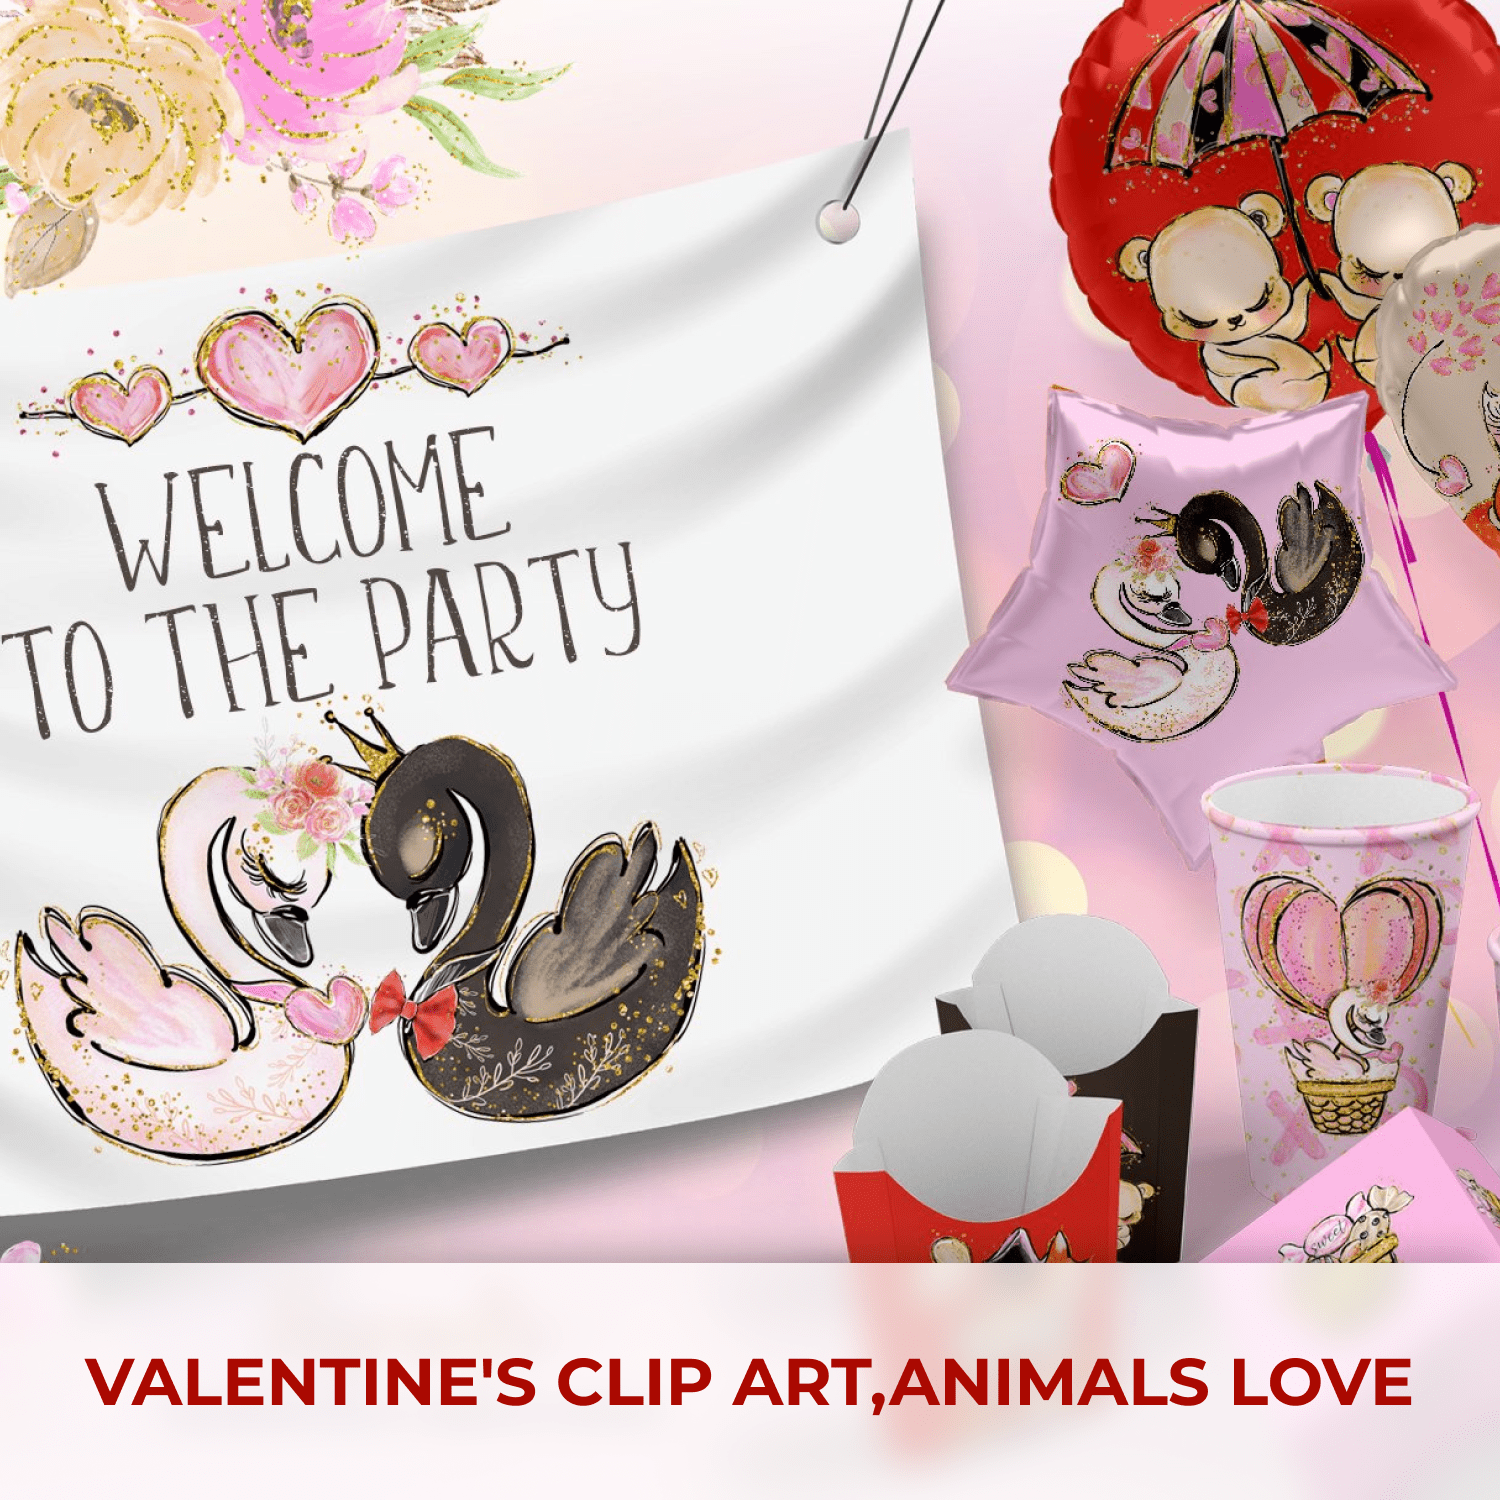 Valentine's clip art,animals love.